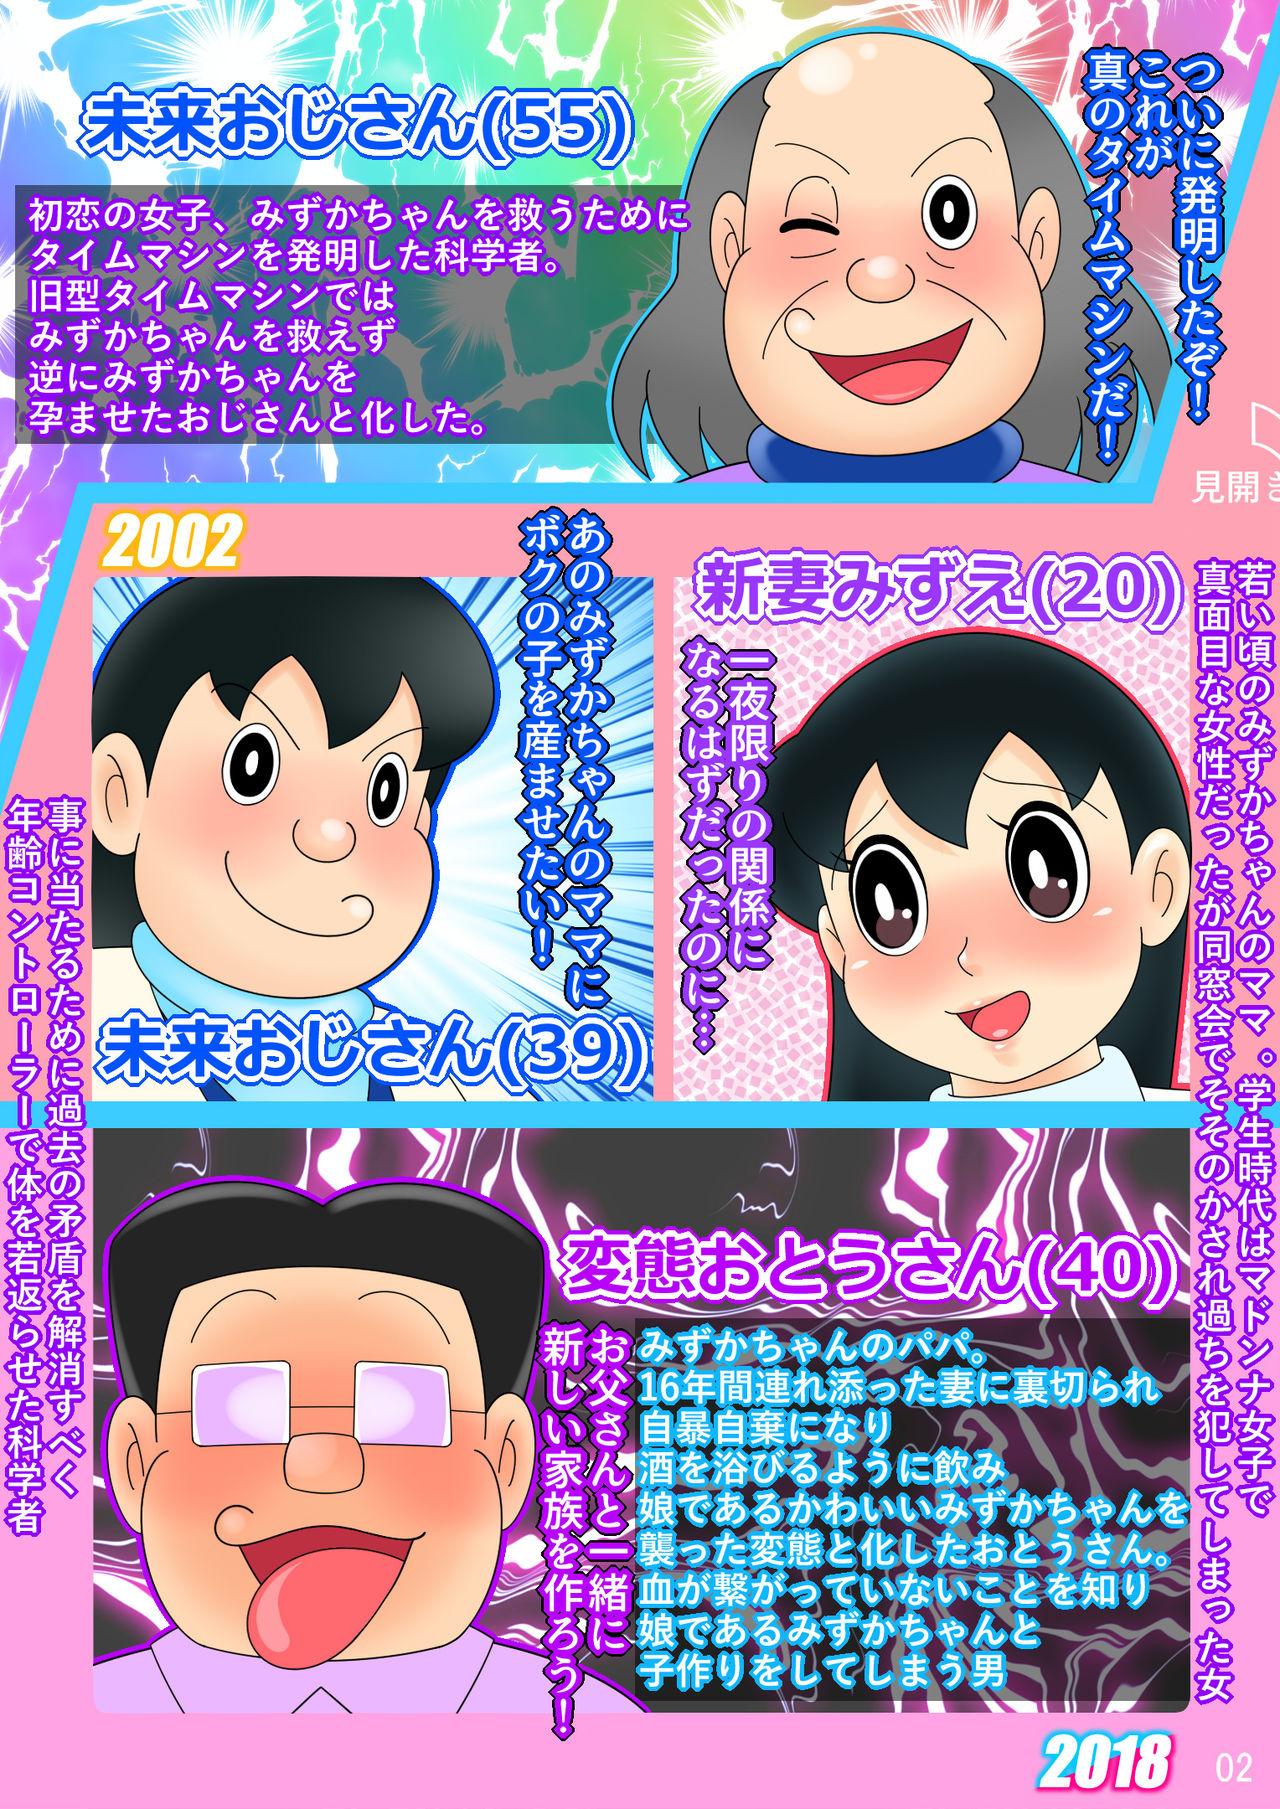 (Ho kuchi☆nanatsuboshi-chū) Yokubō kaihō taimu mashin aratame [mizu ka mama-hen] kako kaihen! Furin taku tamago& oyako dōji-ko-tsukuri (Doraemon) 1